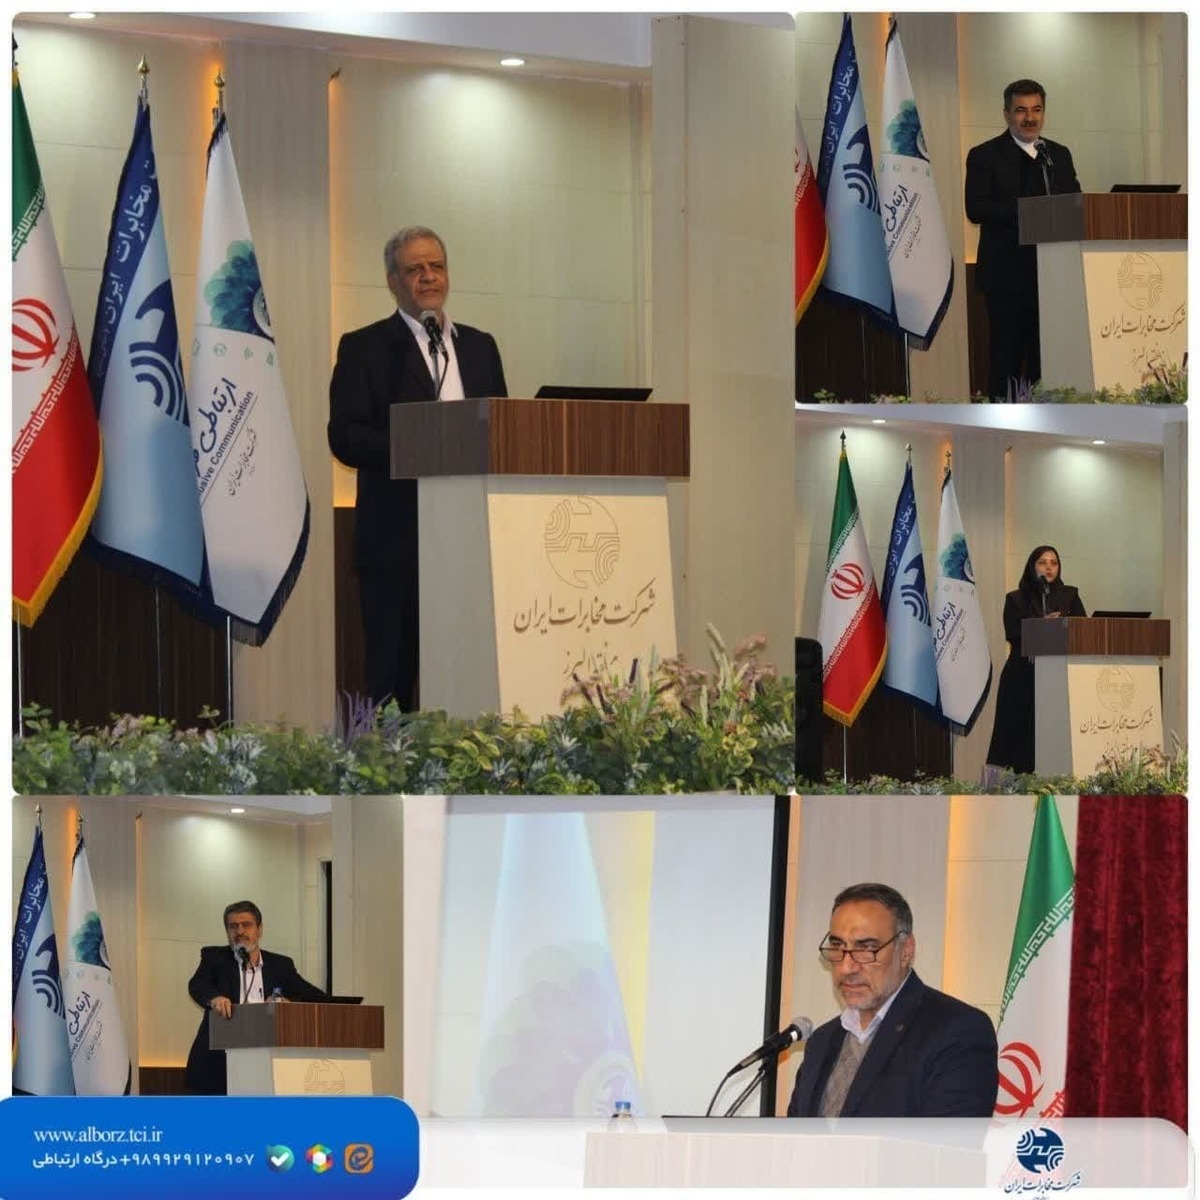 برگزاری همایش مخابرات وتحول دیجیتال در صنعت کشاورزی و دامپروری در منطقه البرز